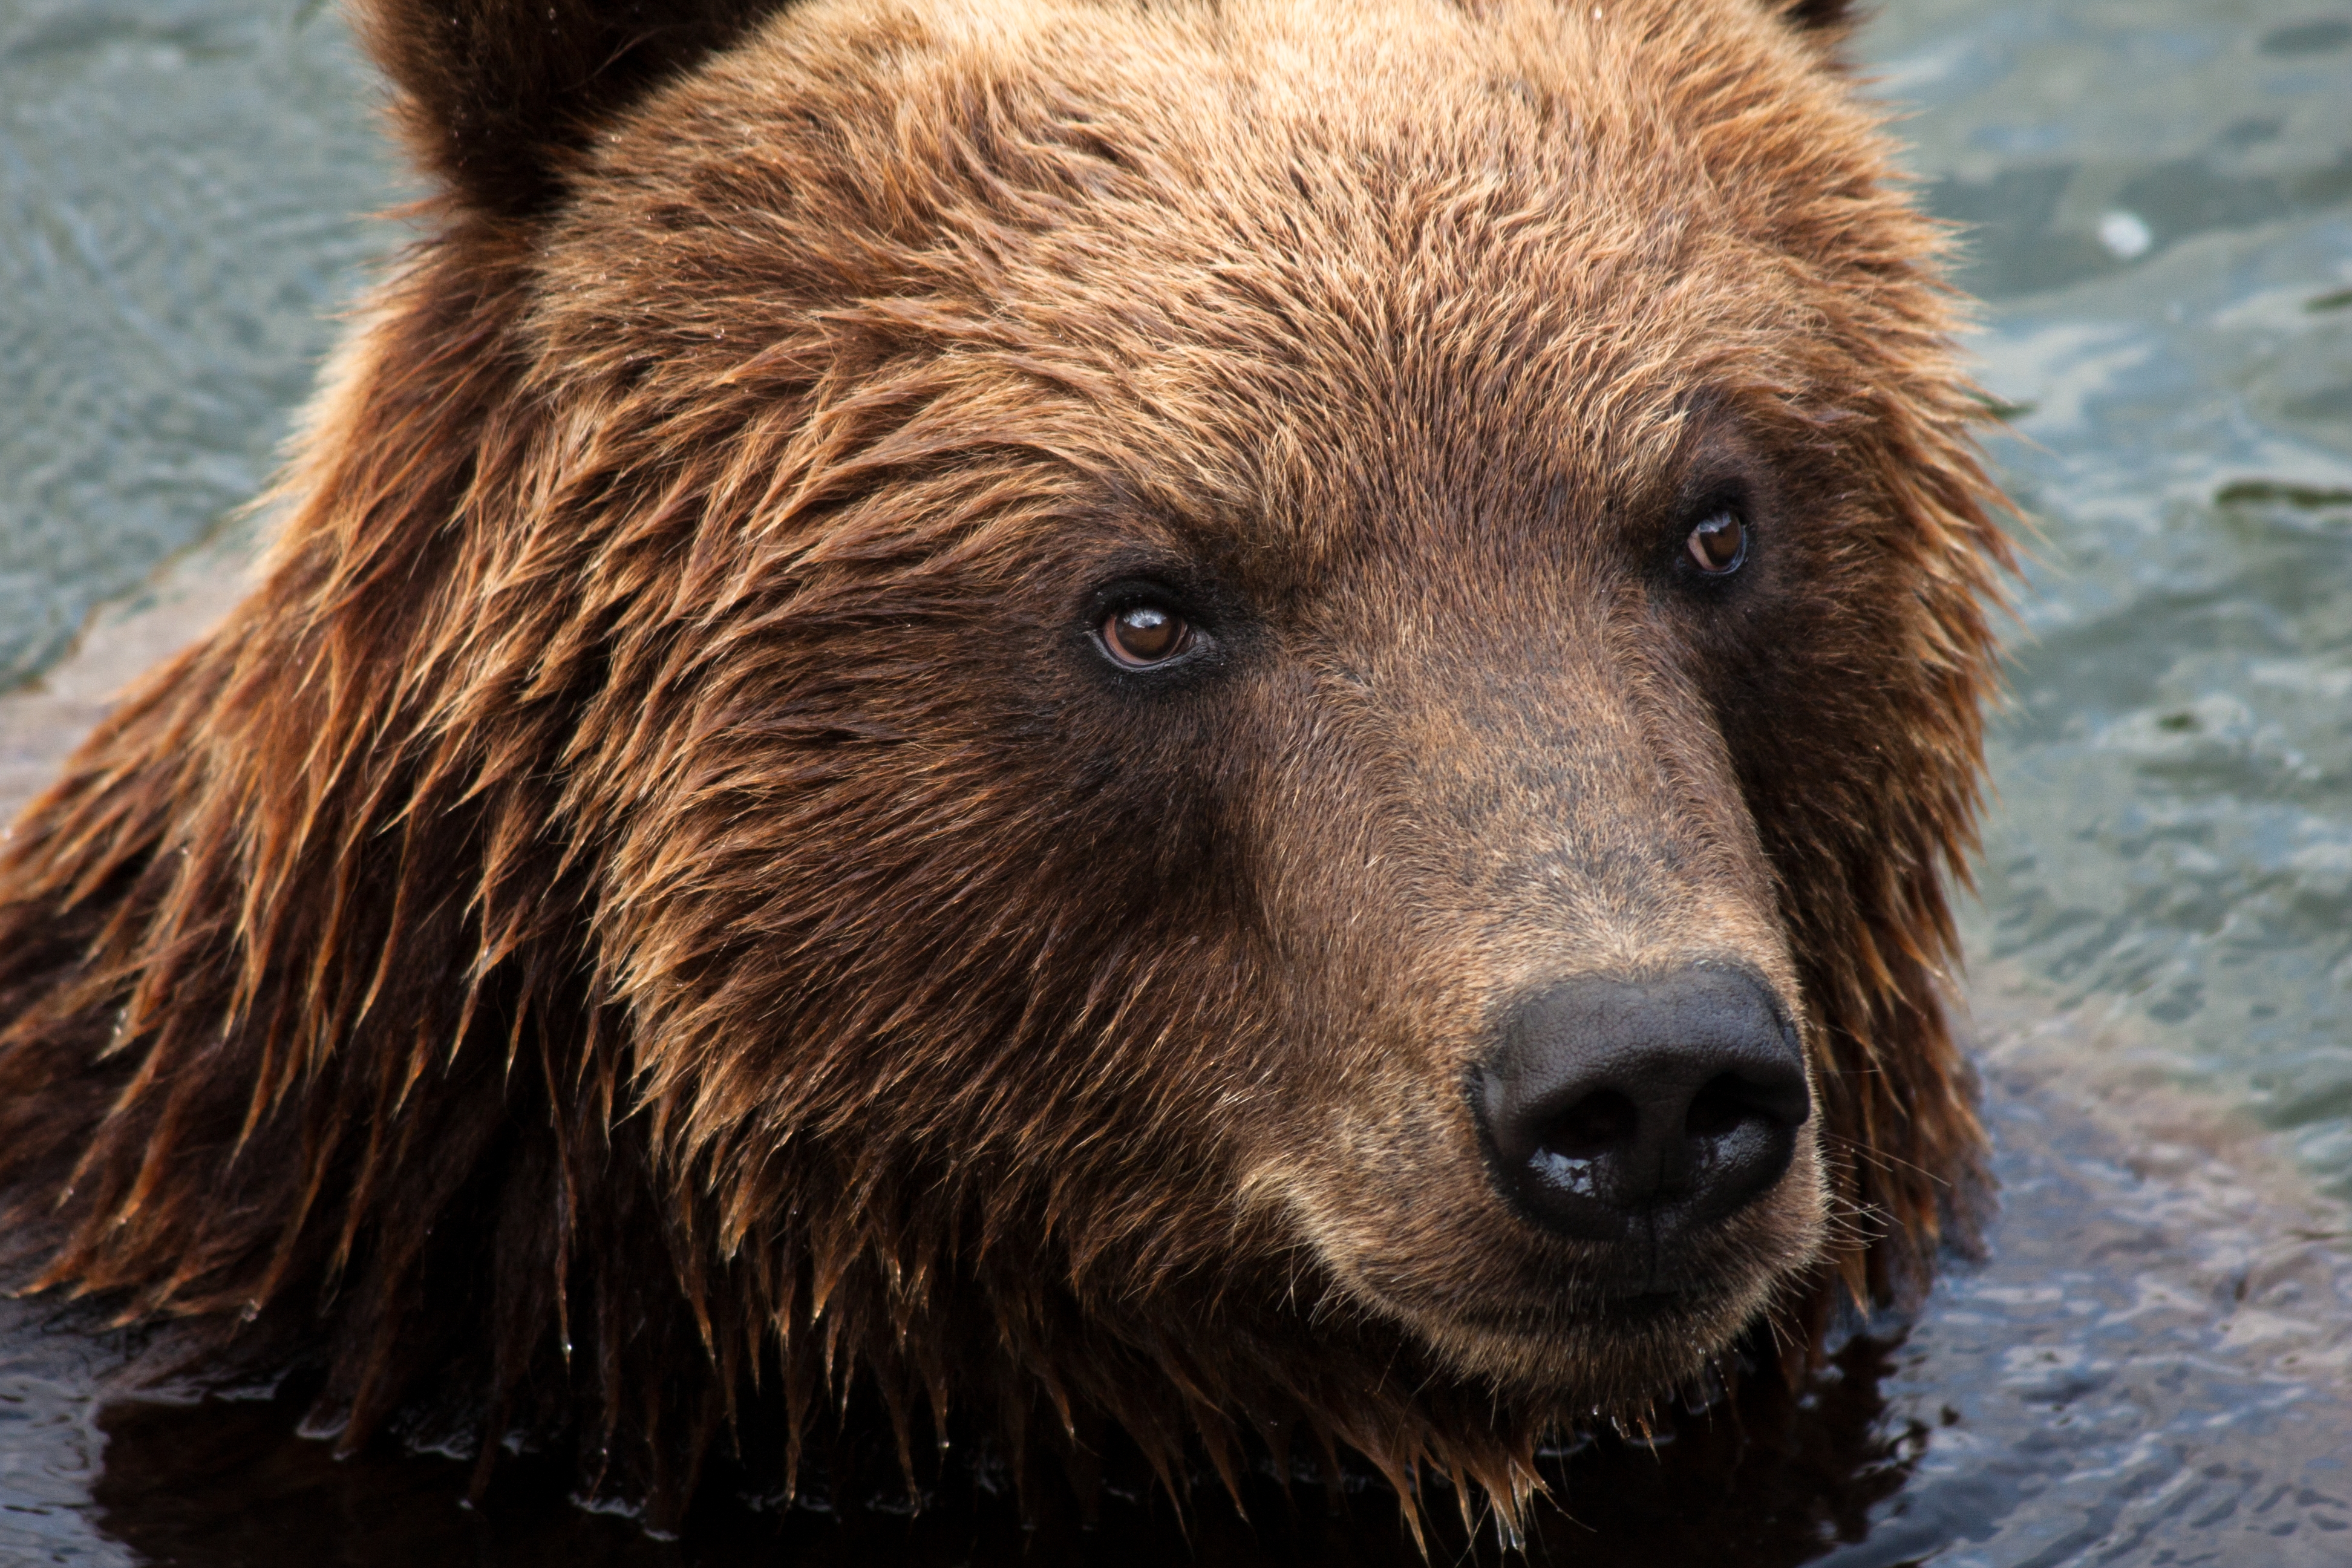 Популярные заставки и фоны Камчатский Медведь на компьютер